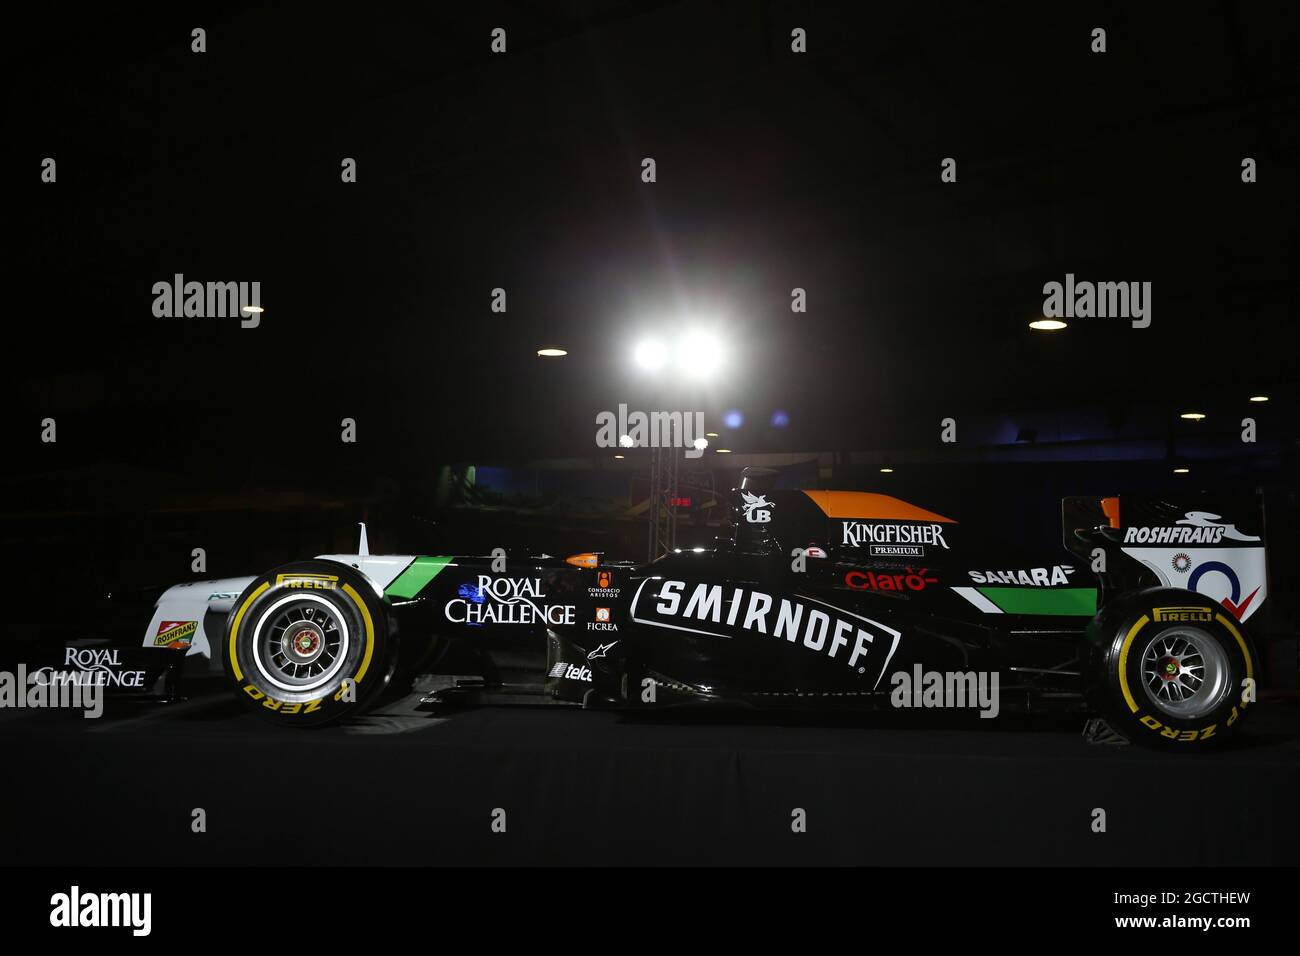 Der Smirnoff-vernickerte Sahara Force India F1 VJM07 wird auf der Smirnoff Launch Party auf einer Kartbahn in Barcelona vorgestellt. Großer Preis von Spanien, Dienstag, 7. Mai 2014. Barcelona, Spanien. Stockfoto